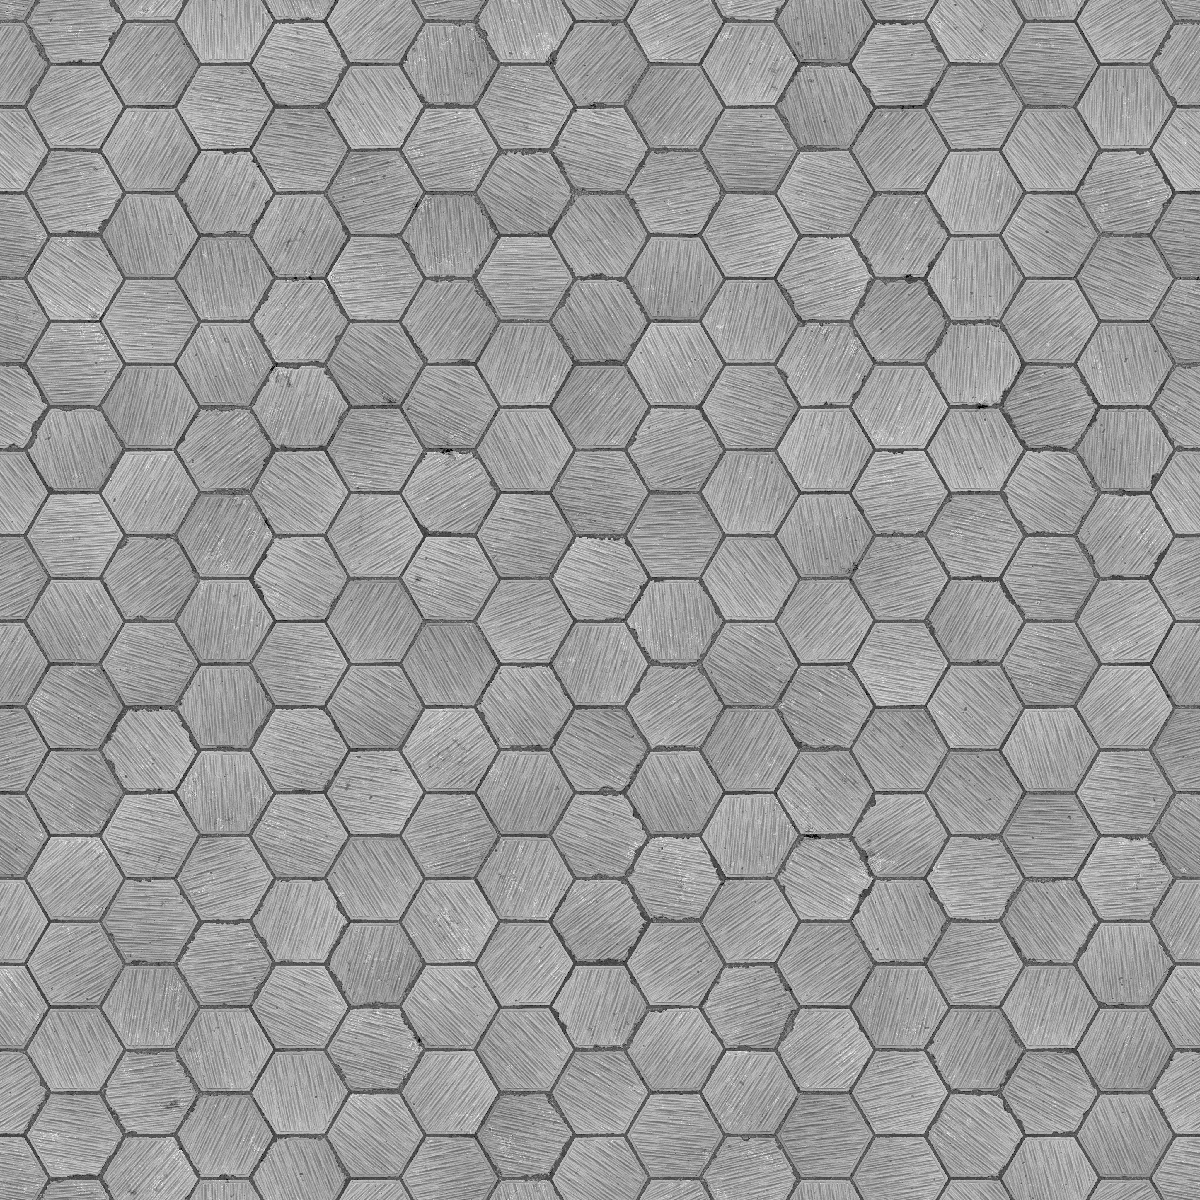 Red Hexagonal Tiles PBR Texture